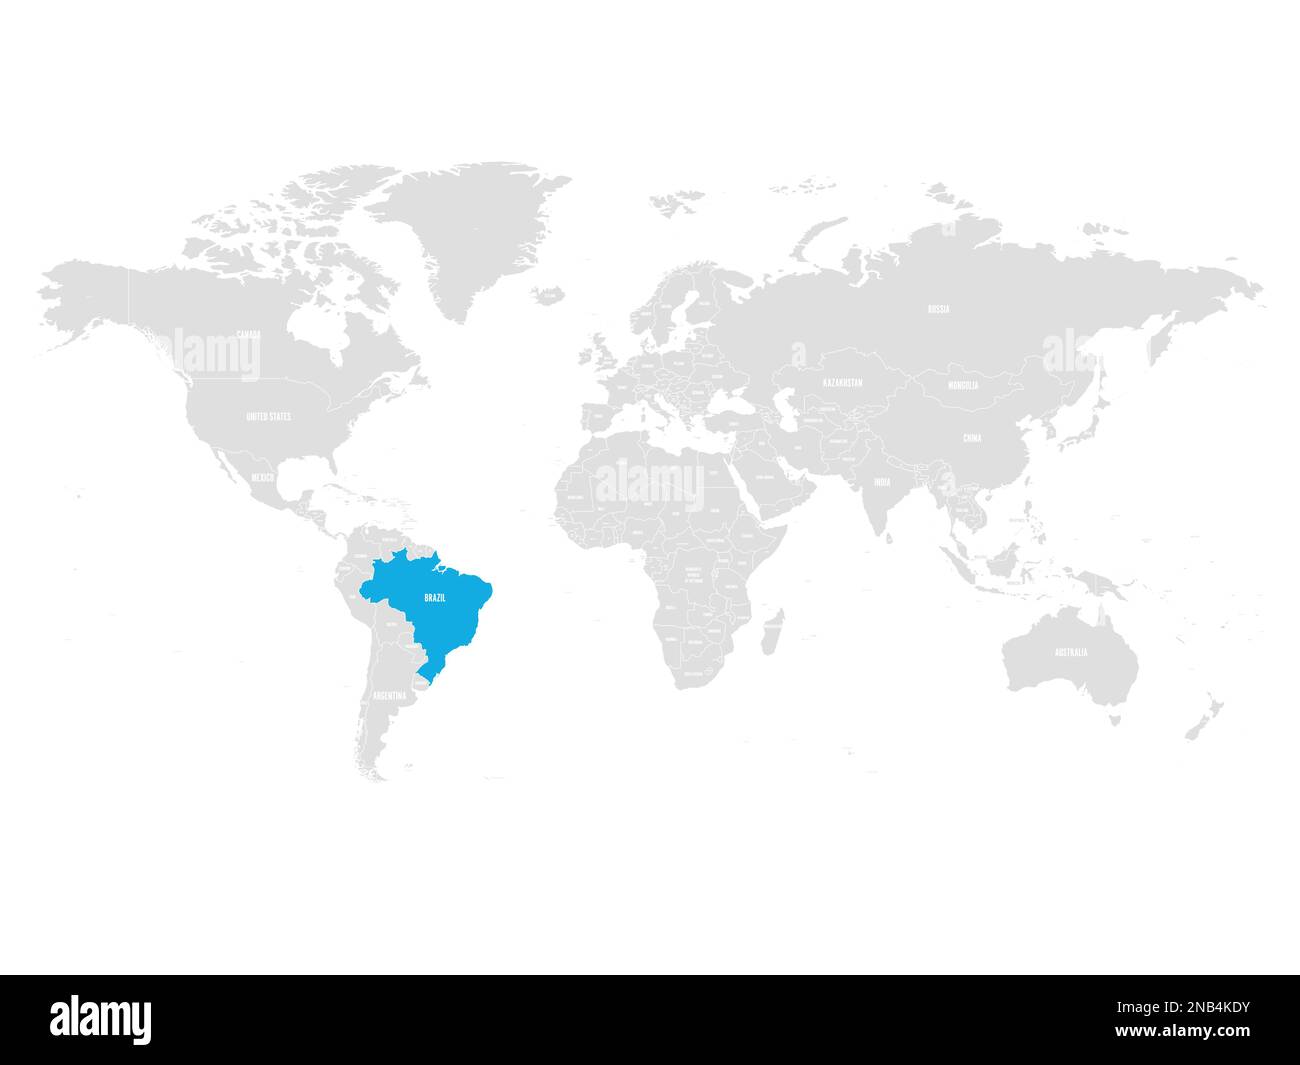 Brasilien mit blauer Farbe auf der grauen politischen Weltkarte. Vektordarstellung. Stock Vektor